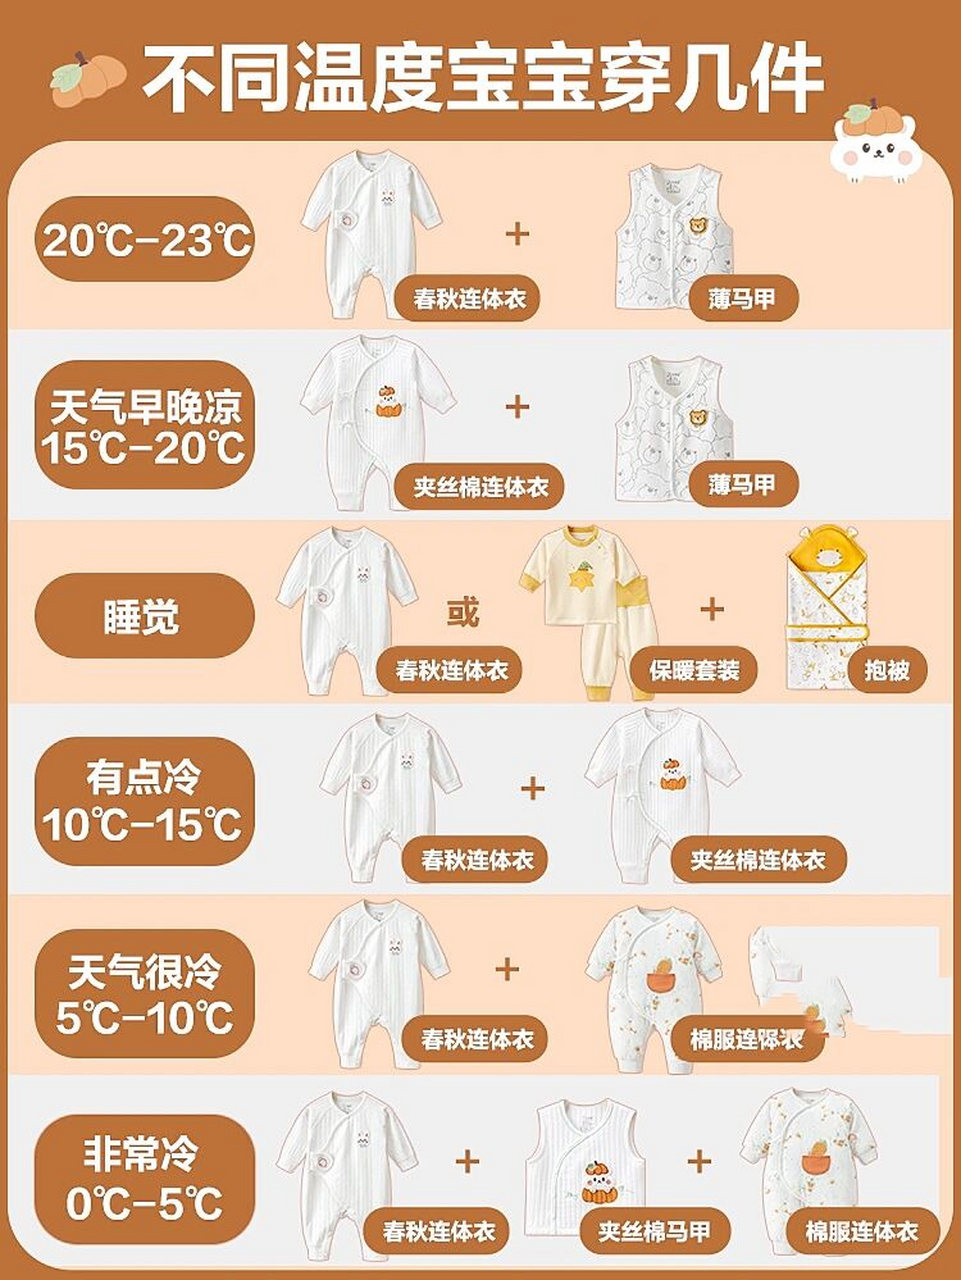 婴儿穿衣服温度标准图片